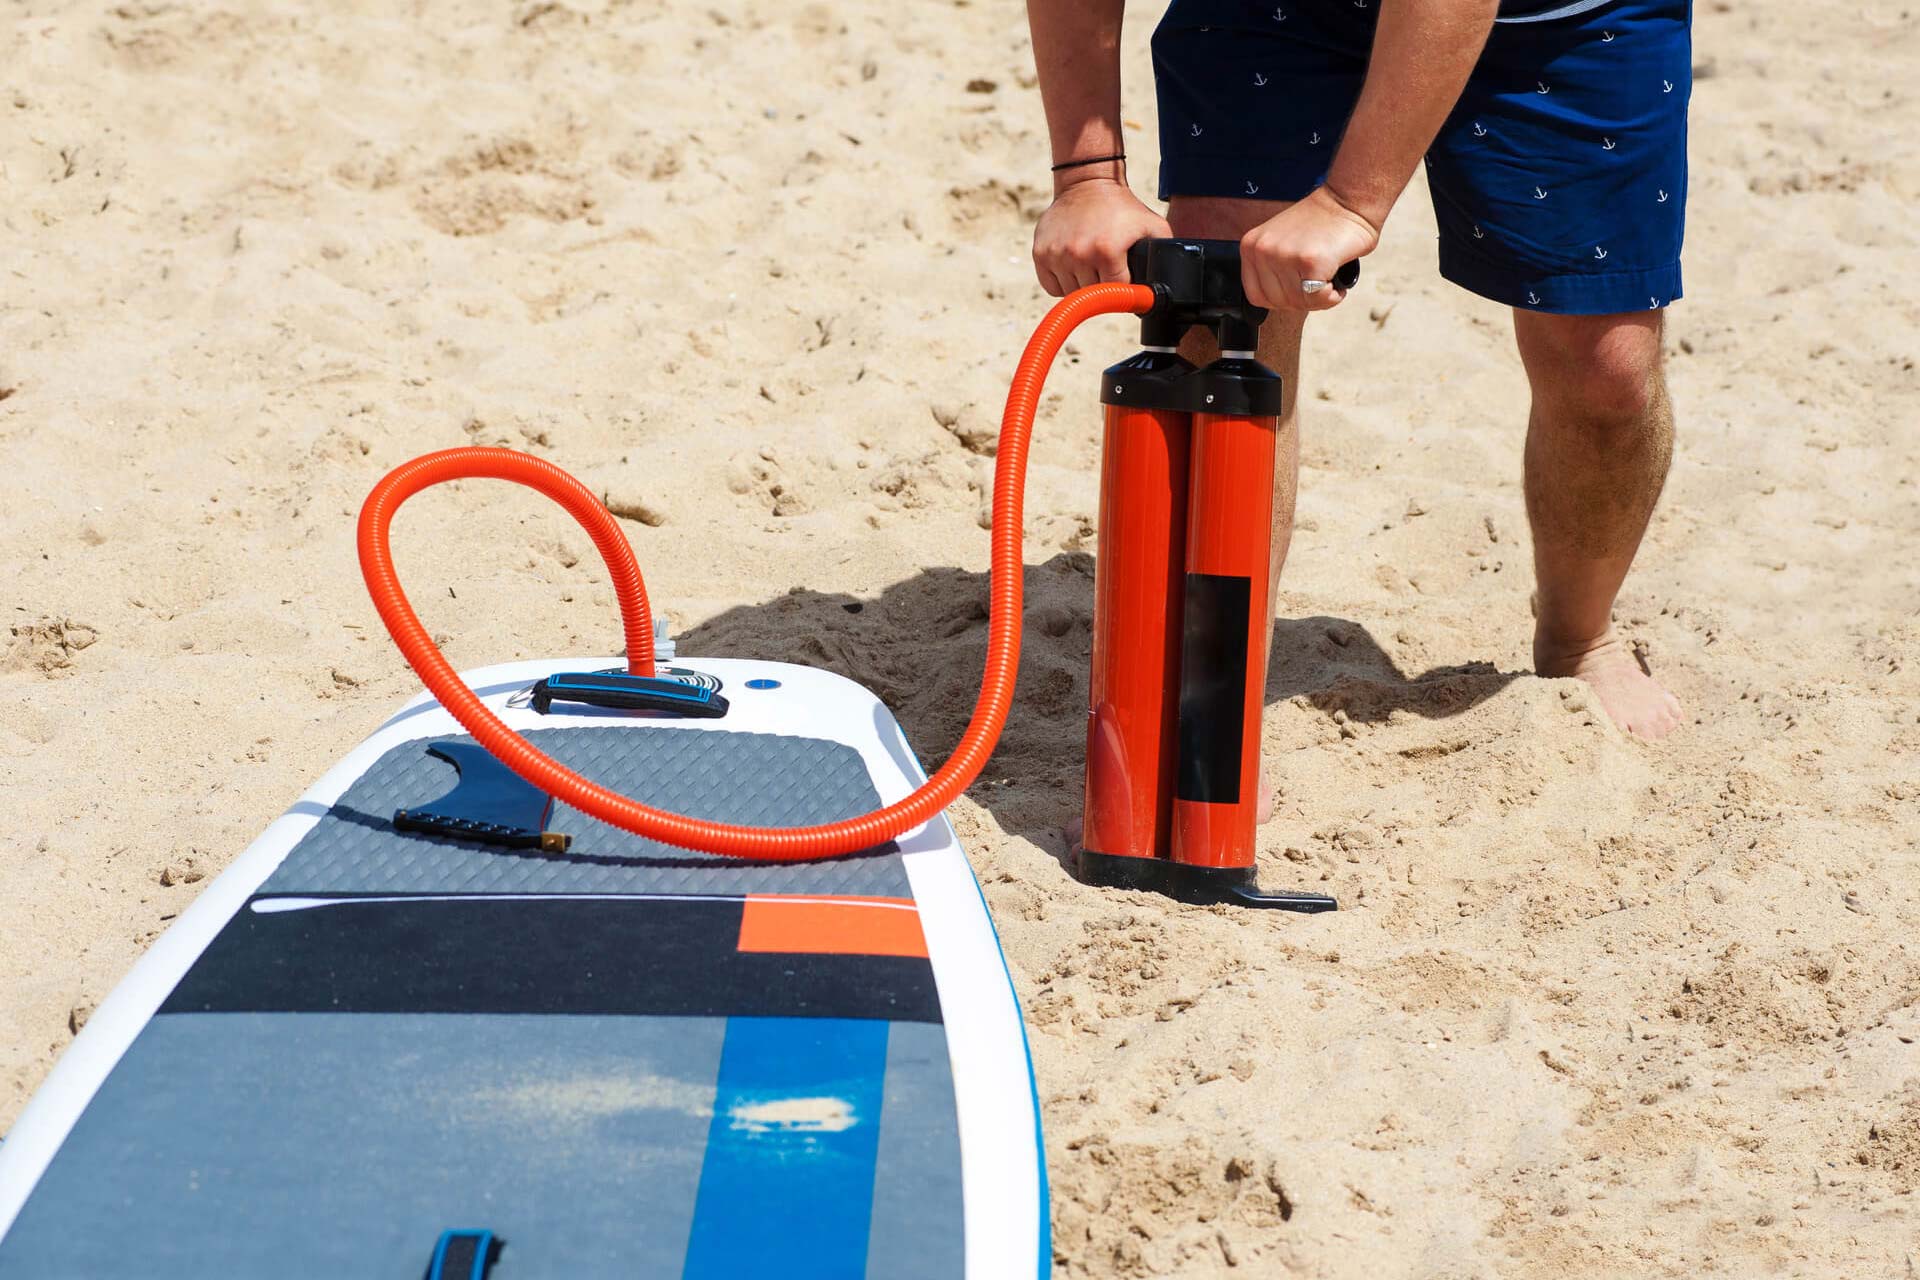 Pompe électrique pour planches de paddle surf 20 PSI gonfle et